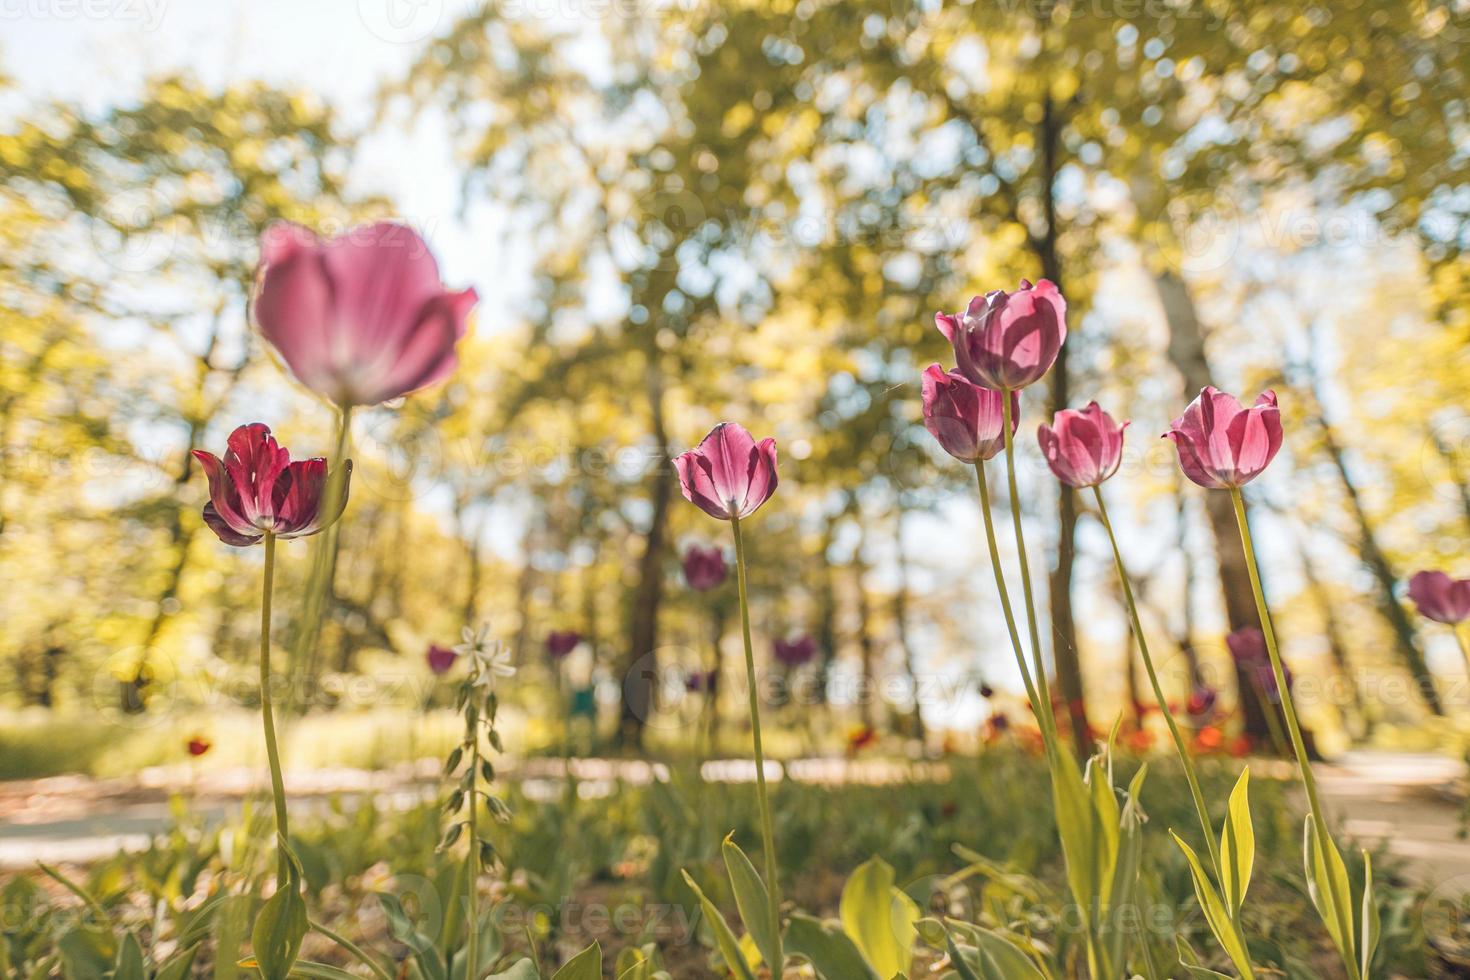 fantastique bouquet de tulipes dans le jardin forestier ou le parc de la ville. tulipes rose vif. fond de nature majestueuse rêveuse, fleurs d'été de printemps photo